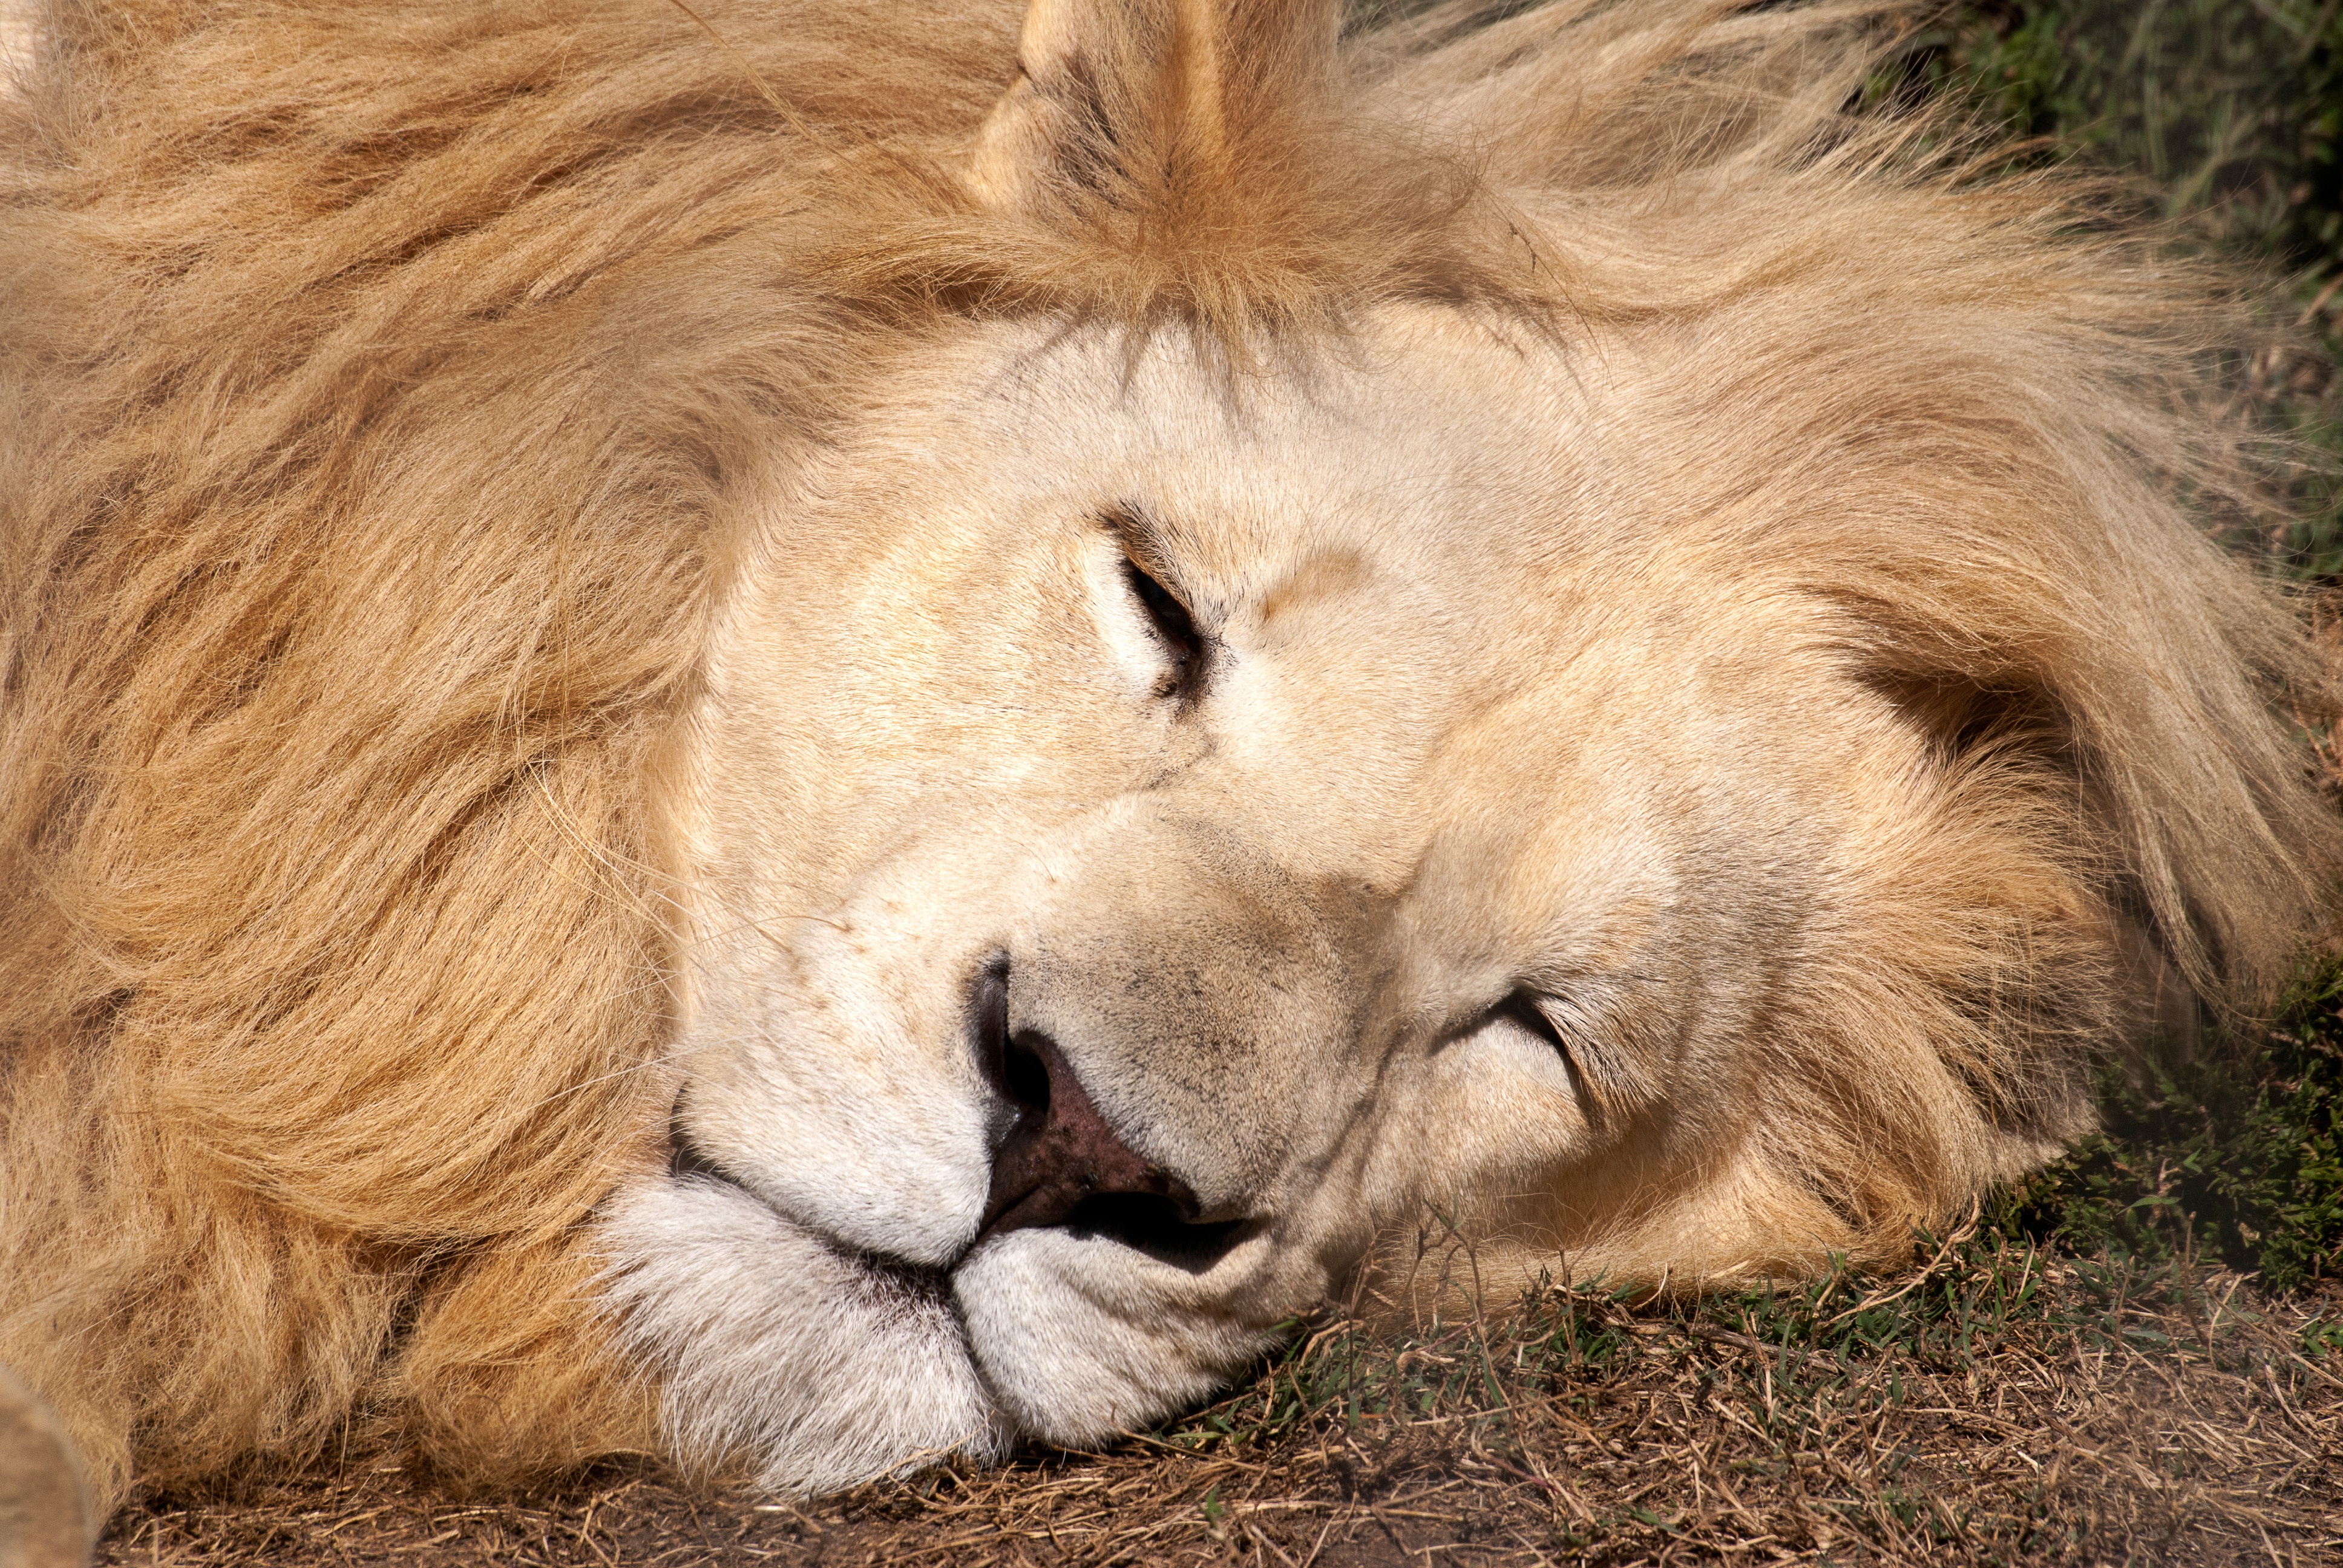 Immagine Leoni addormentata Il muso animale 3872x2592 leone panthera leo sonno dormire Sta dormendo Animali